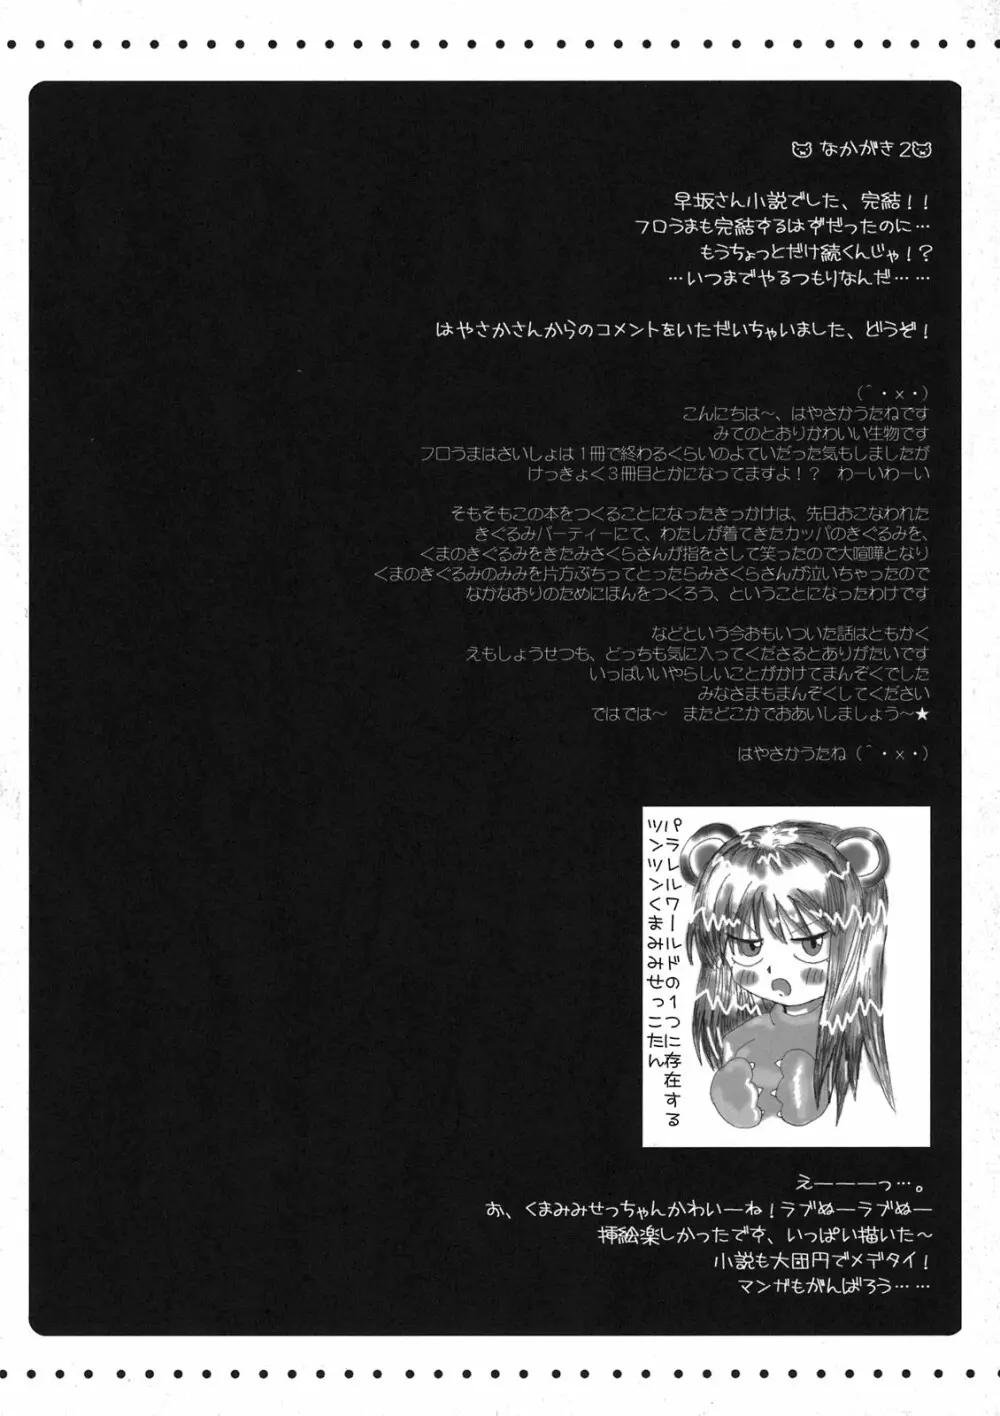 フロうま＊03s 無限のフロンティア＆スパロボZ乳牛姫とセッコたんの本 44ページ